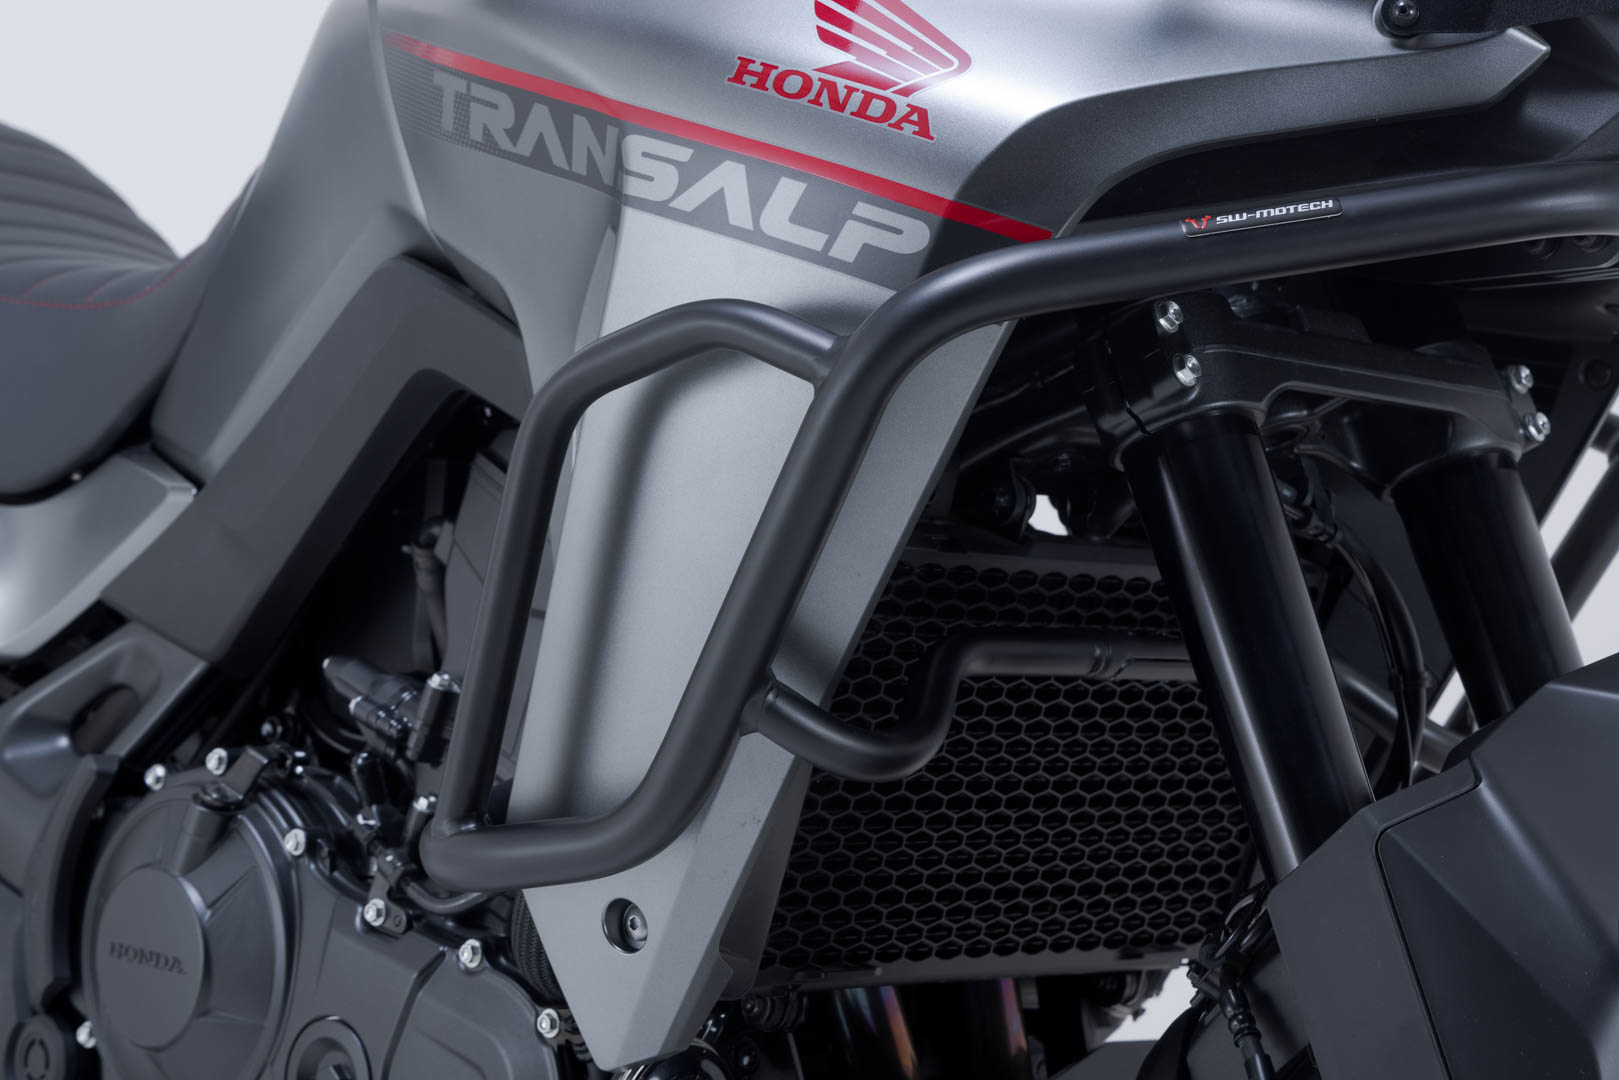 Protecciones laterales de motor Negro. Honda XL750 Transalp (22-).